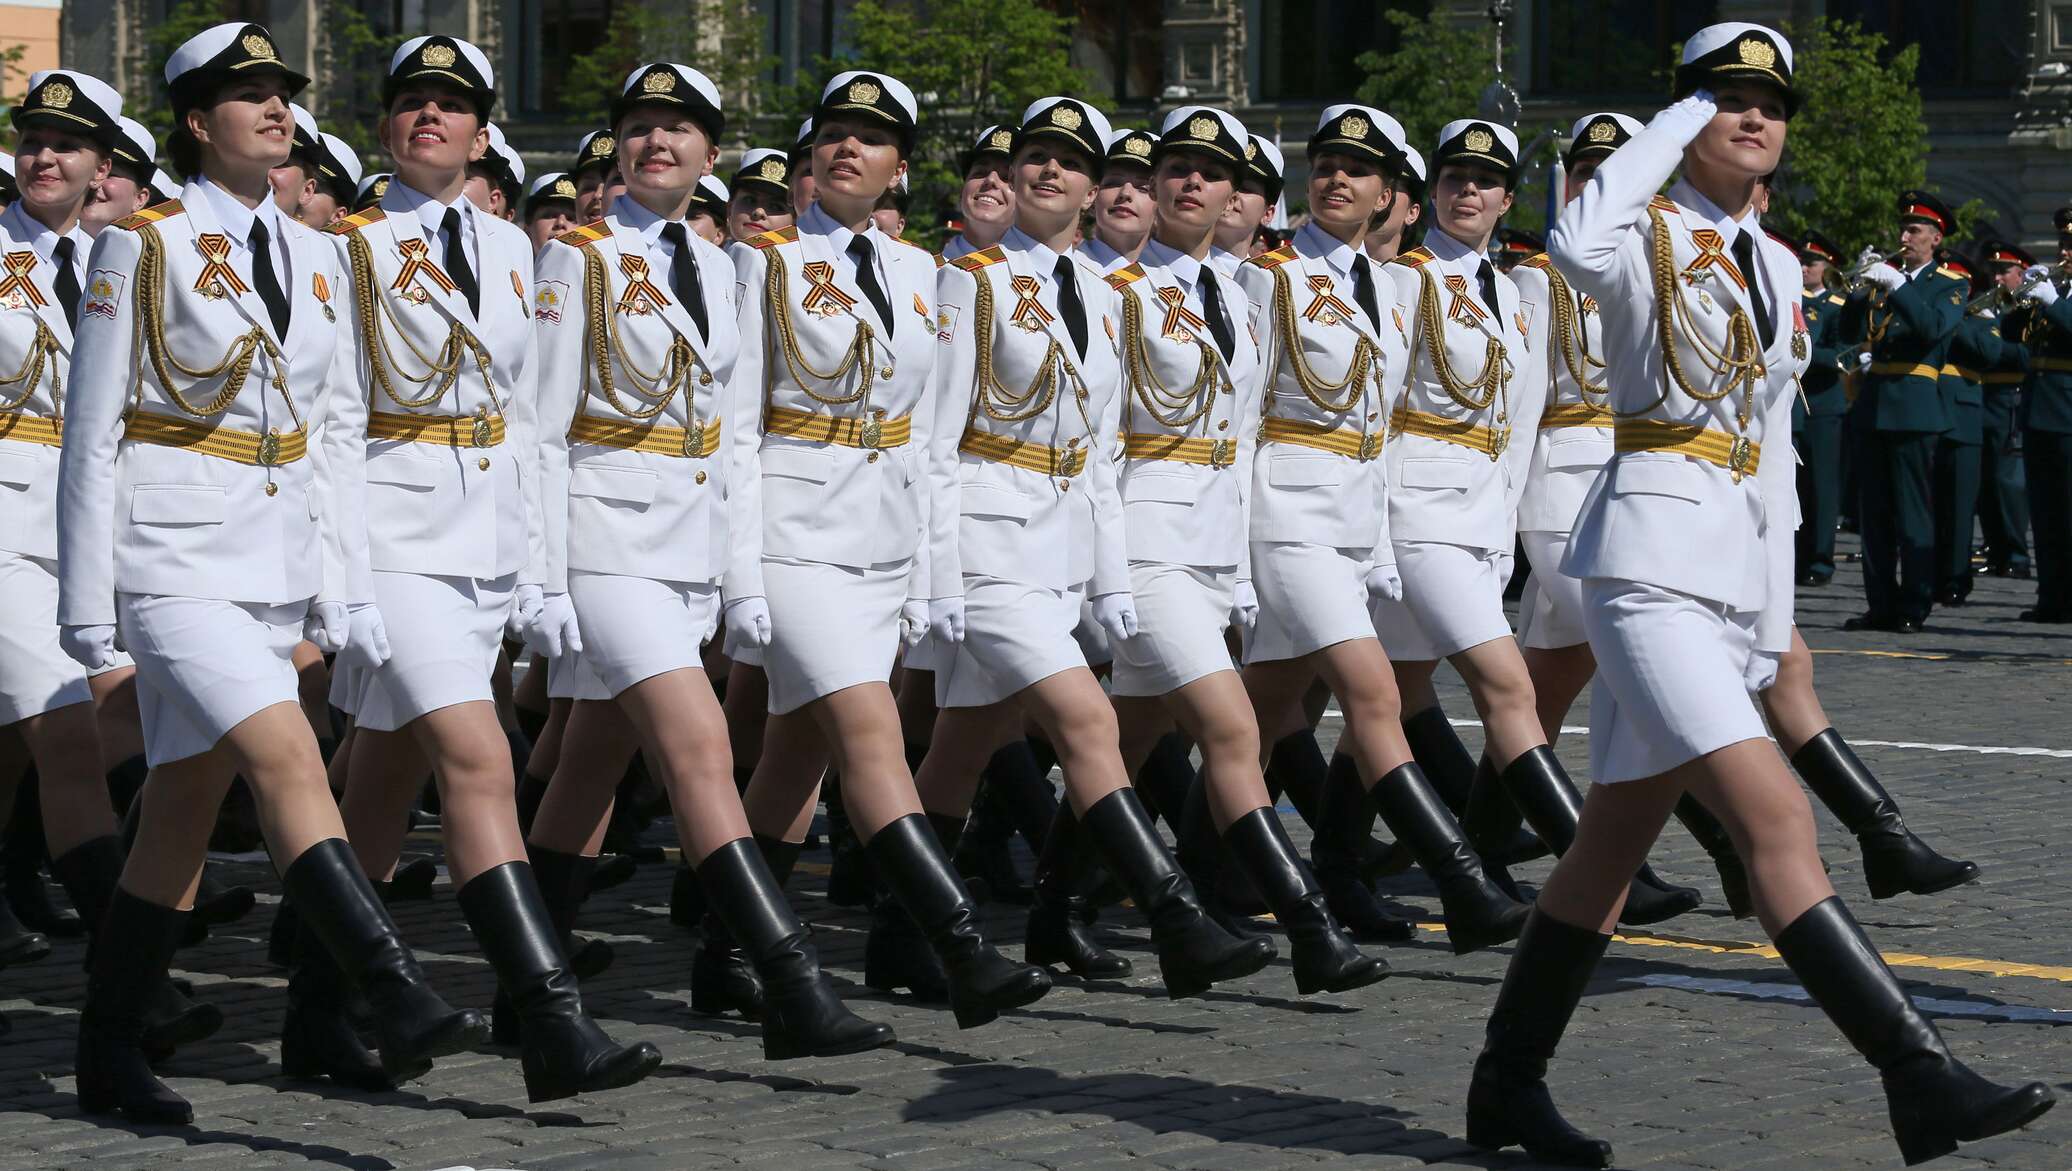 Военные девушки в мини юбках